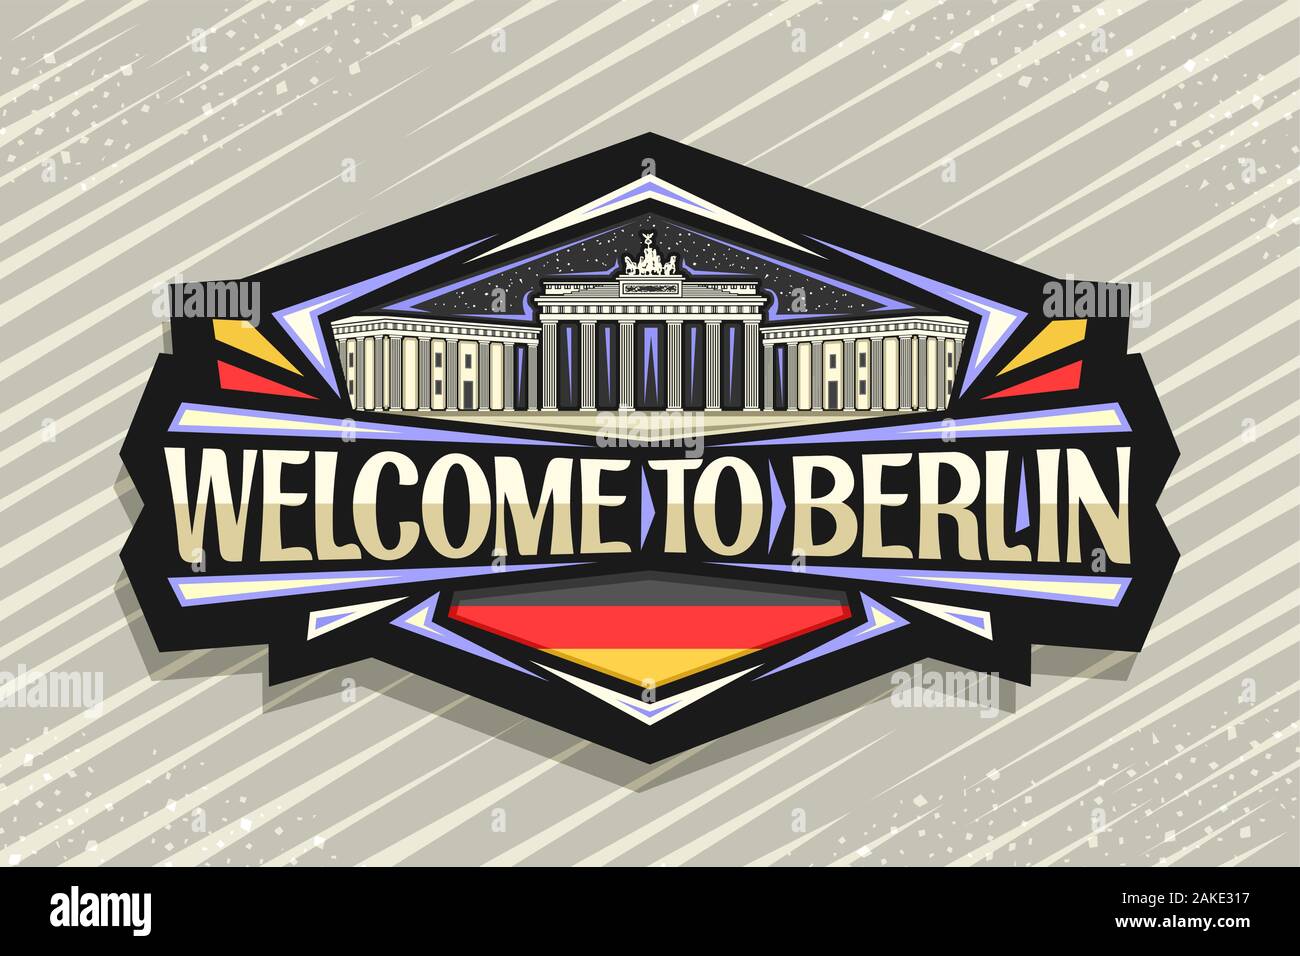 Vektor logo für Berlin, dunkle dekorative Abzeichen mit der Abbildung des Brandenburger Tor am Himmel Hintergrund, touristische Kühlschrank Magnet mit ursprünglichen Schrifttyp fo Stock Vektor